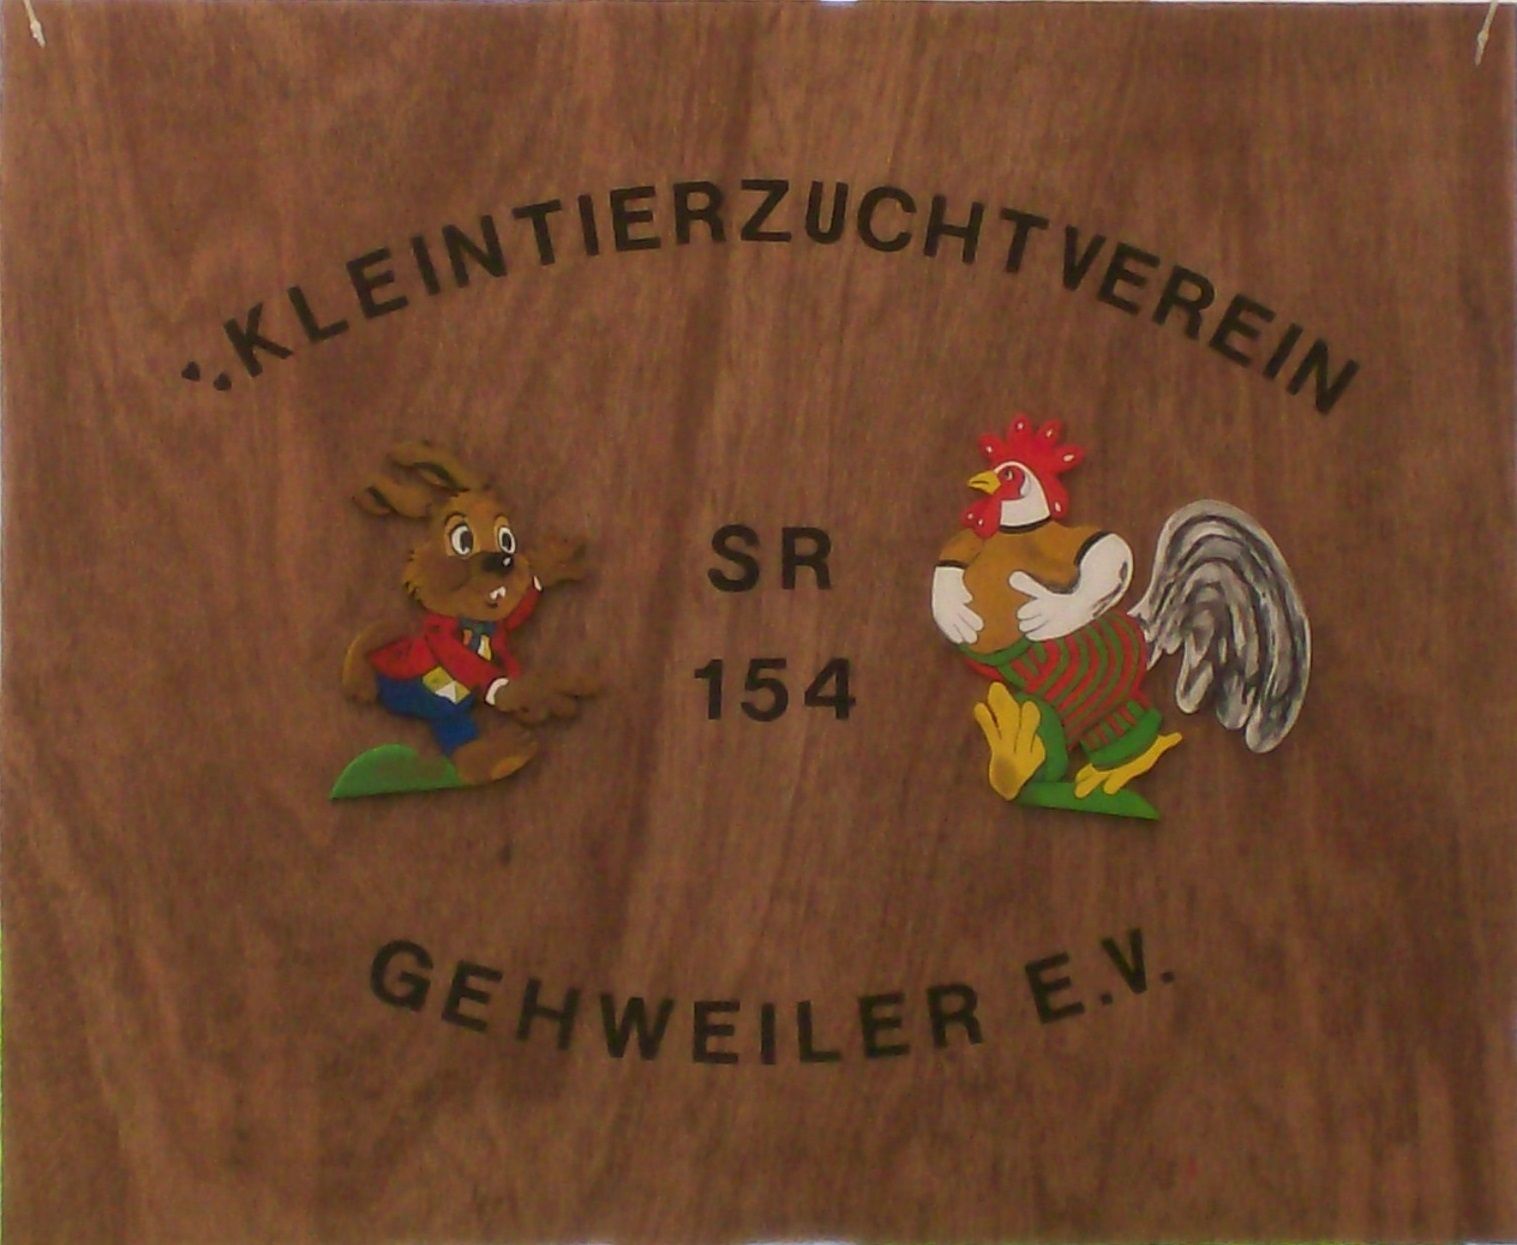 Profilbild des Vereins 'Kleintierzuchtverein SR 154 Gehweiler e.V.'